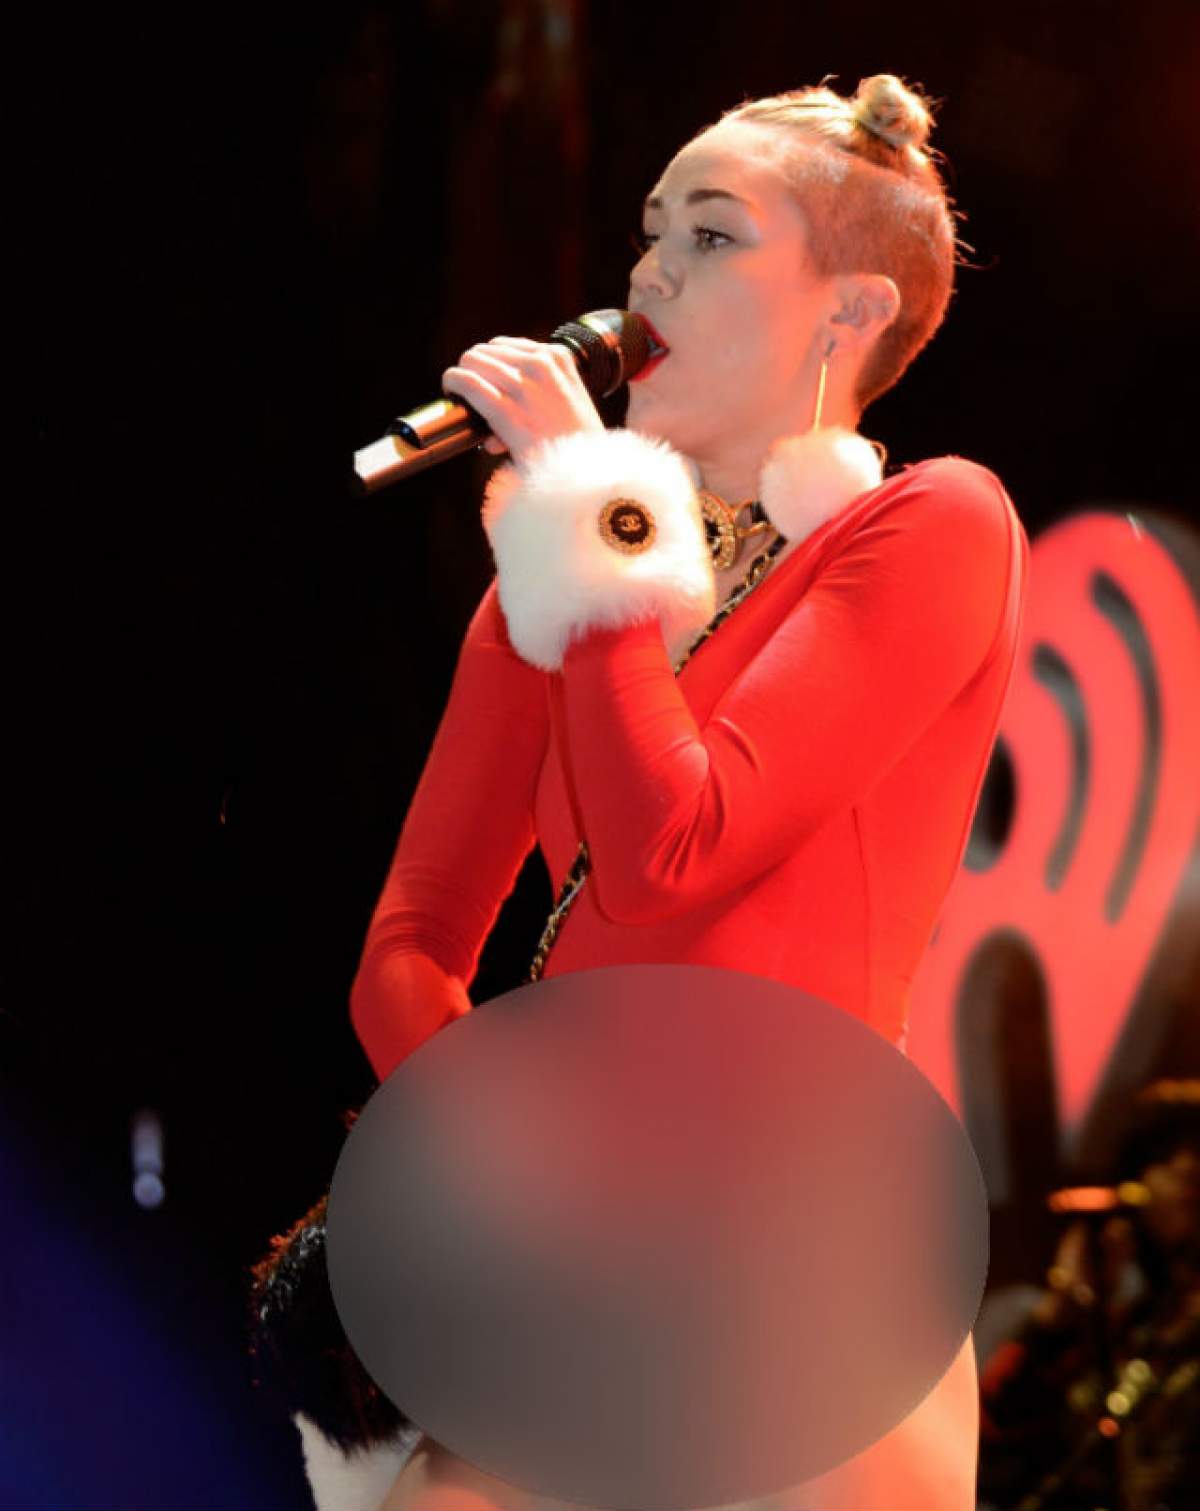 Se masturbează şi i se vede tot! Uite-o pe Miley Cyrus cum îşi mângâie încontinuu zonele intime!